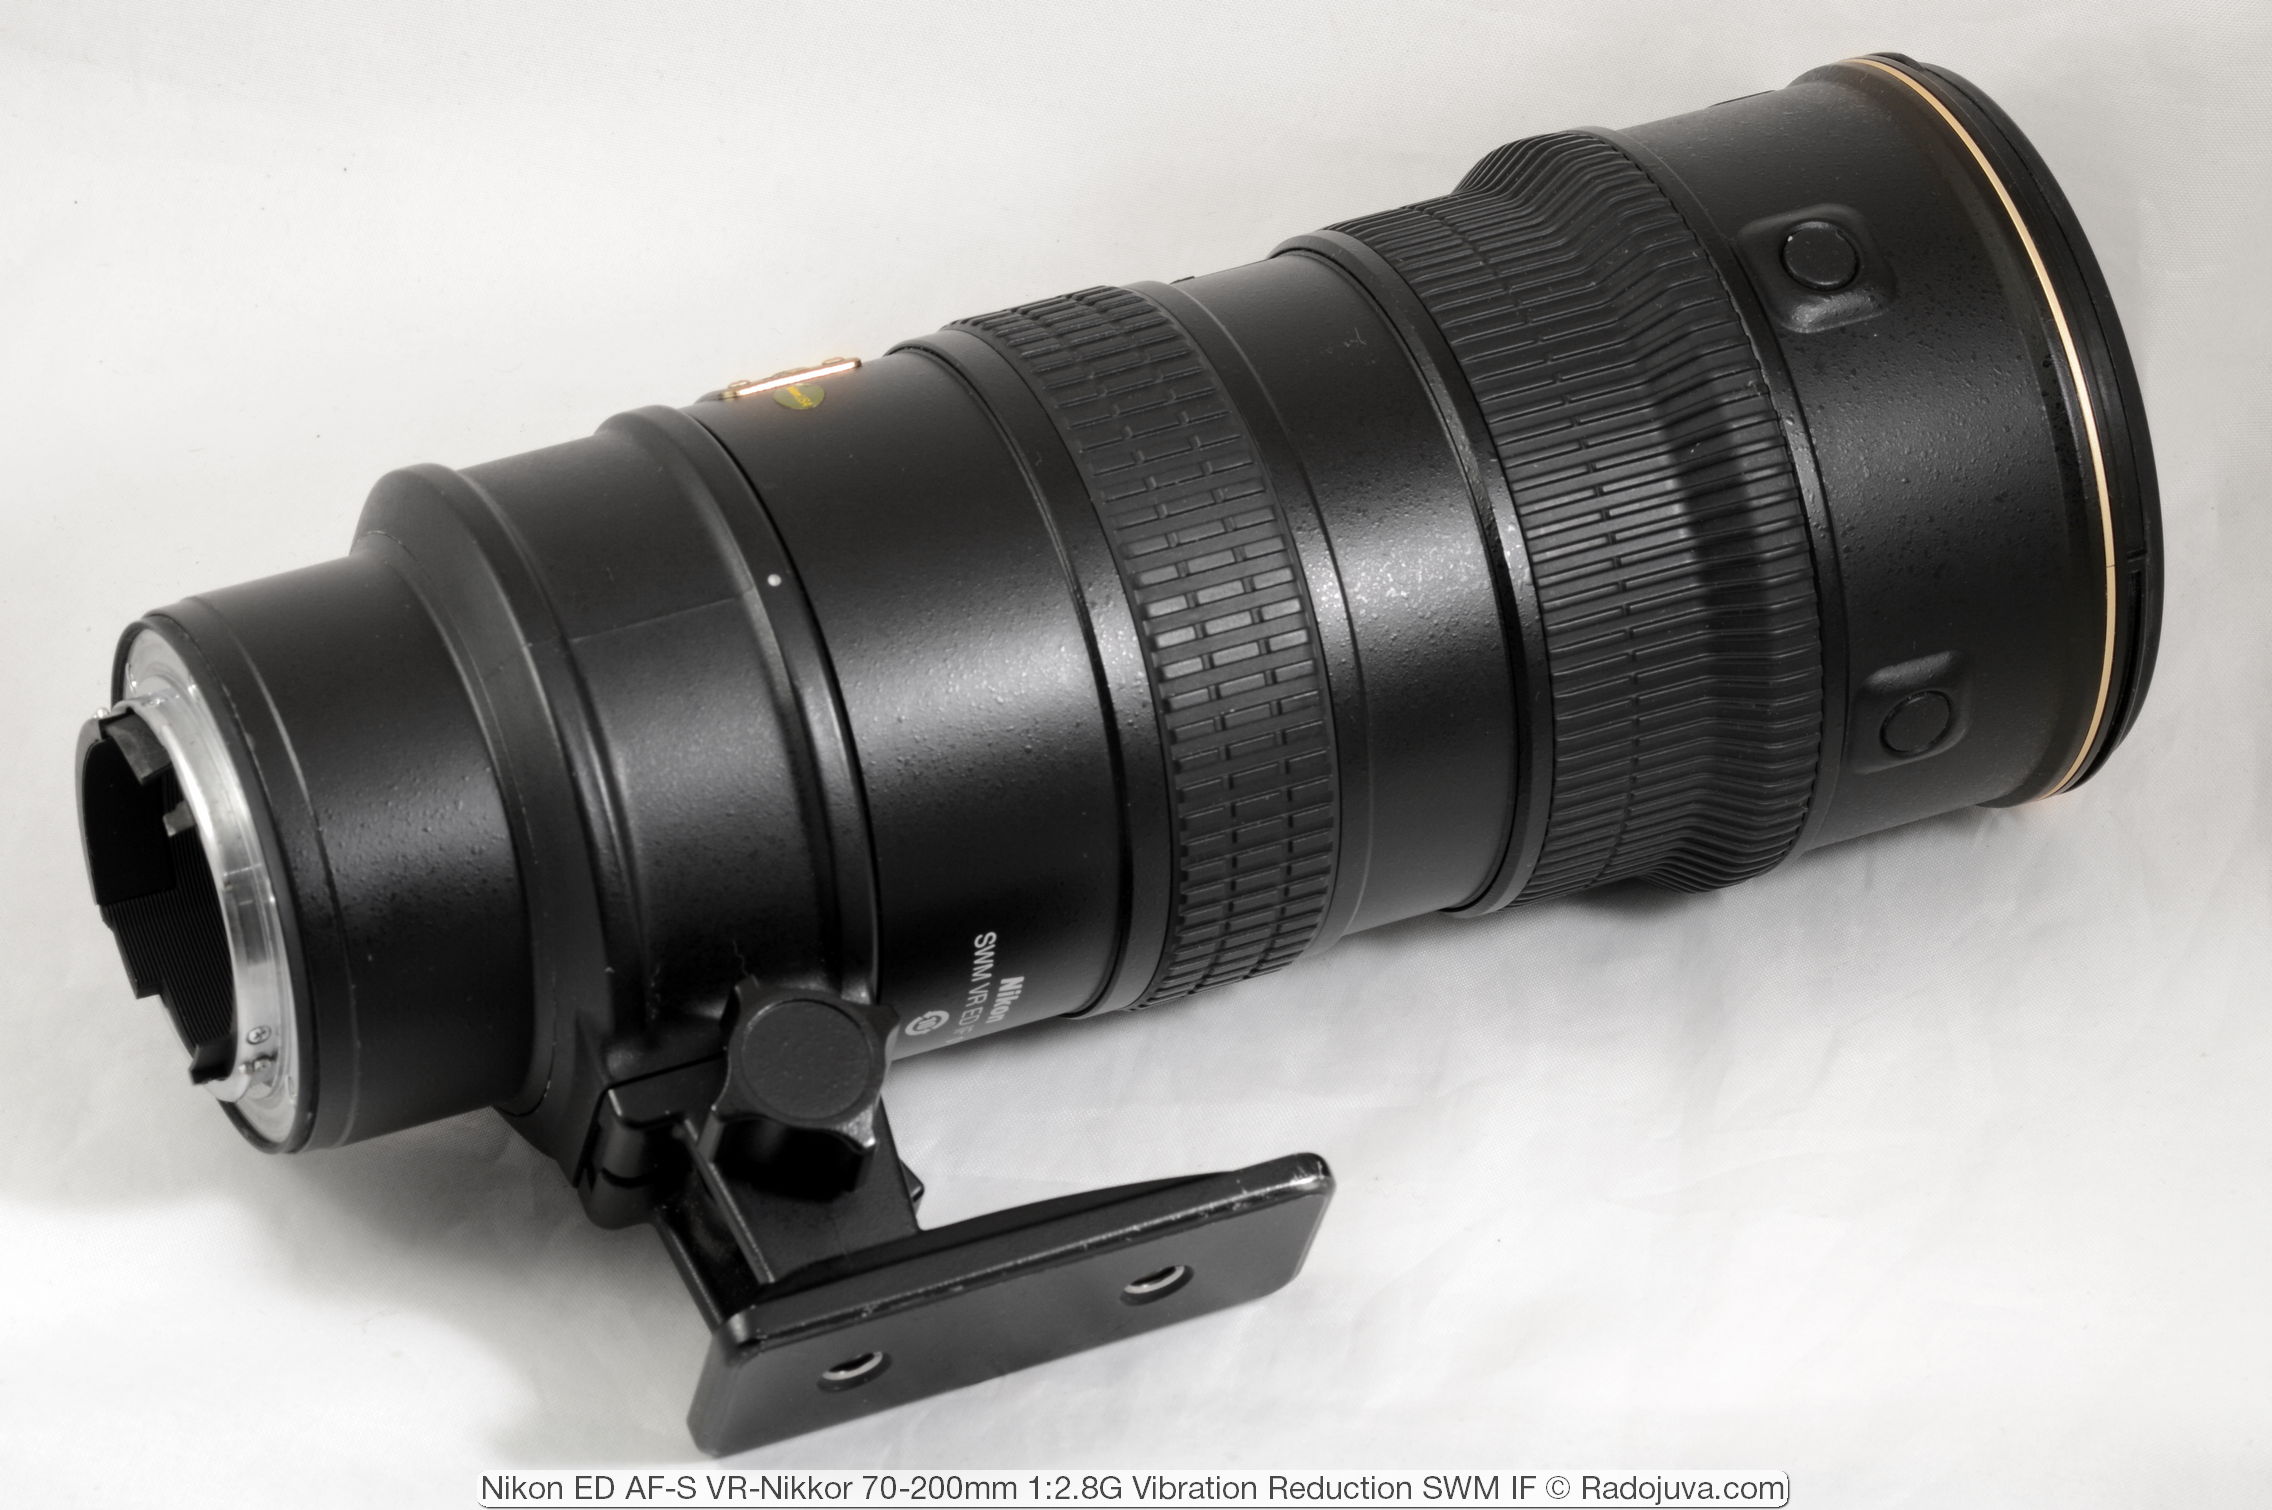 Nikon ED AF-S VR-Nikkor 70-200mm 1:2.8G (Vibration Reduction SWM IF)